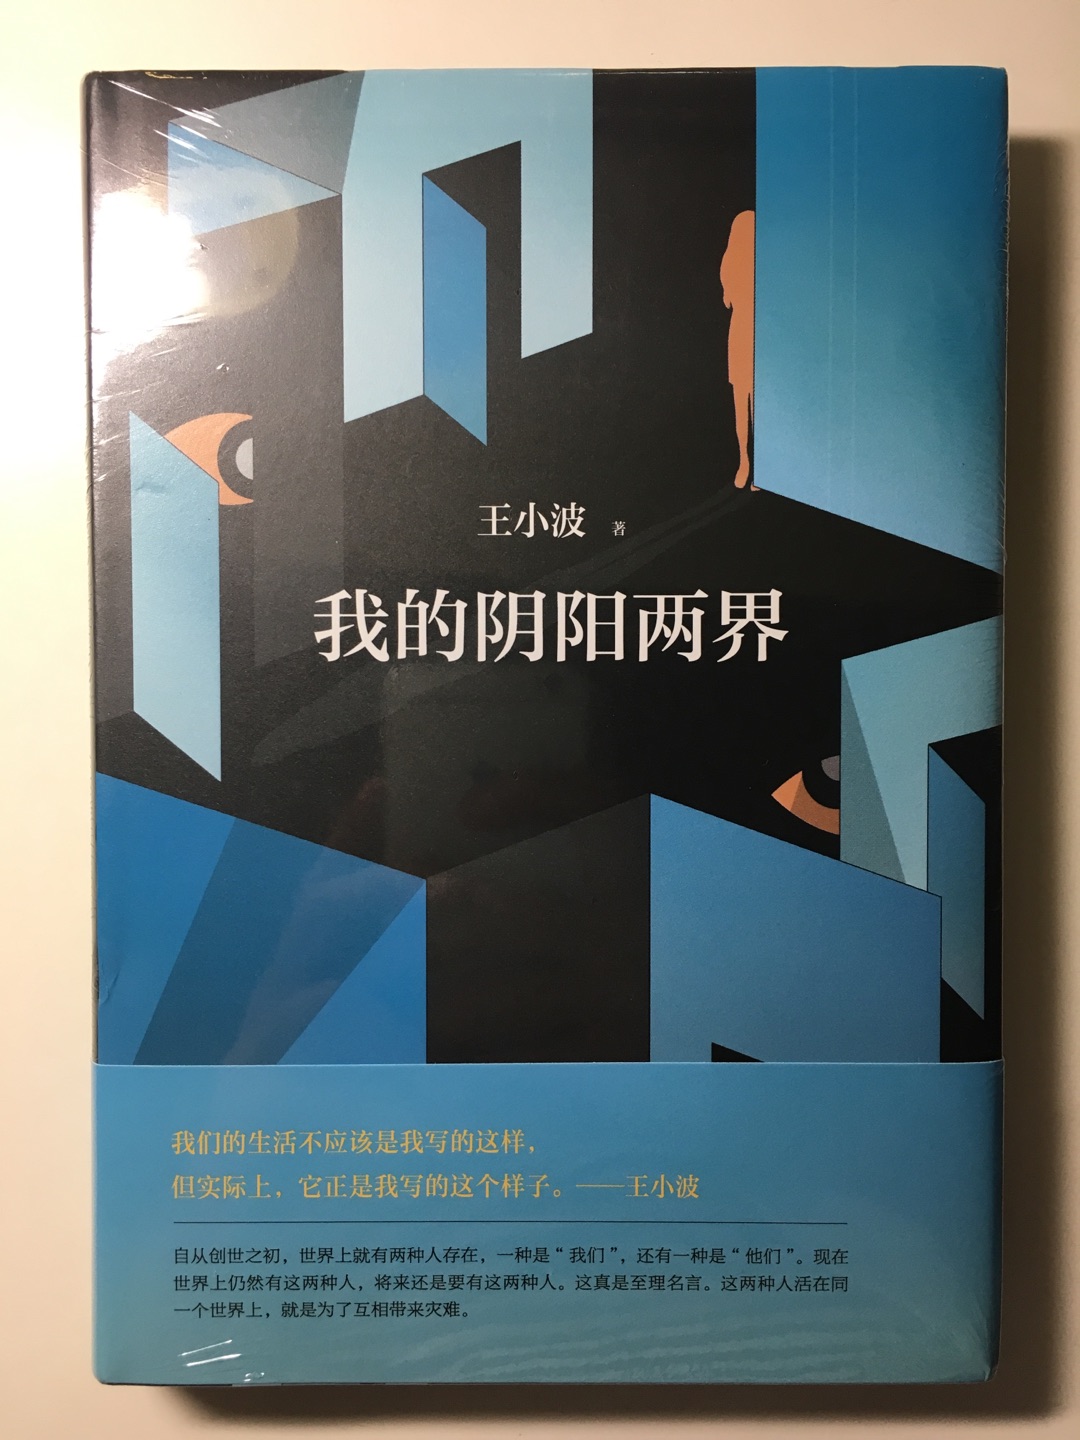 已经买齐了一整套新经典版的王小波文集，是目前最精美的王小波文集了。等待最后几本出版。